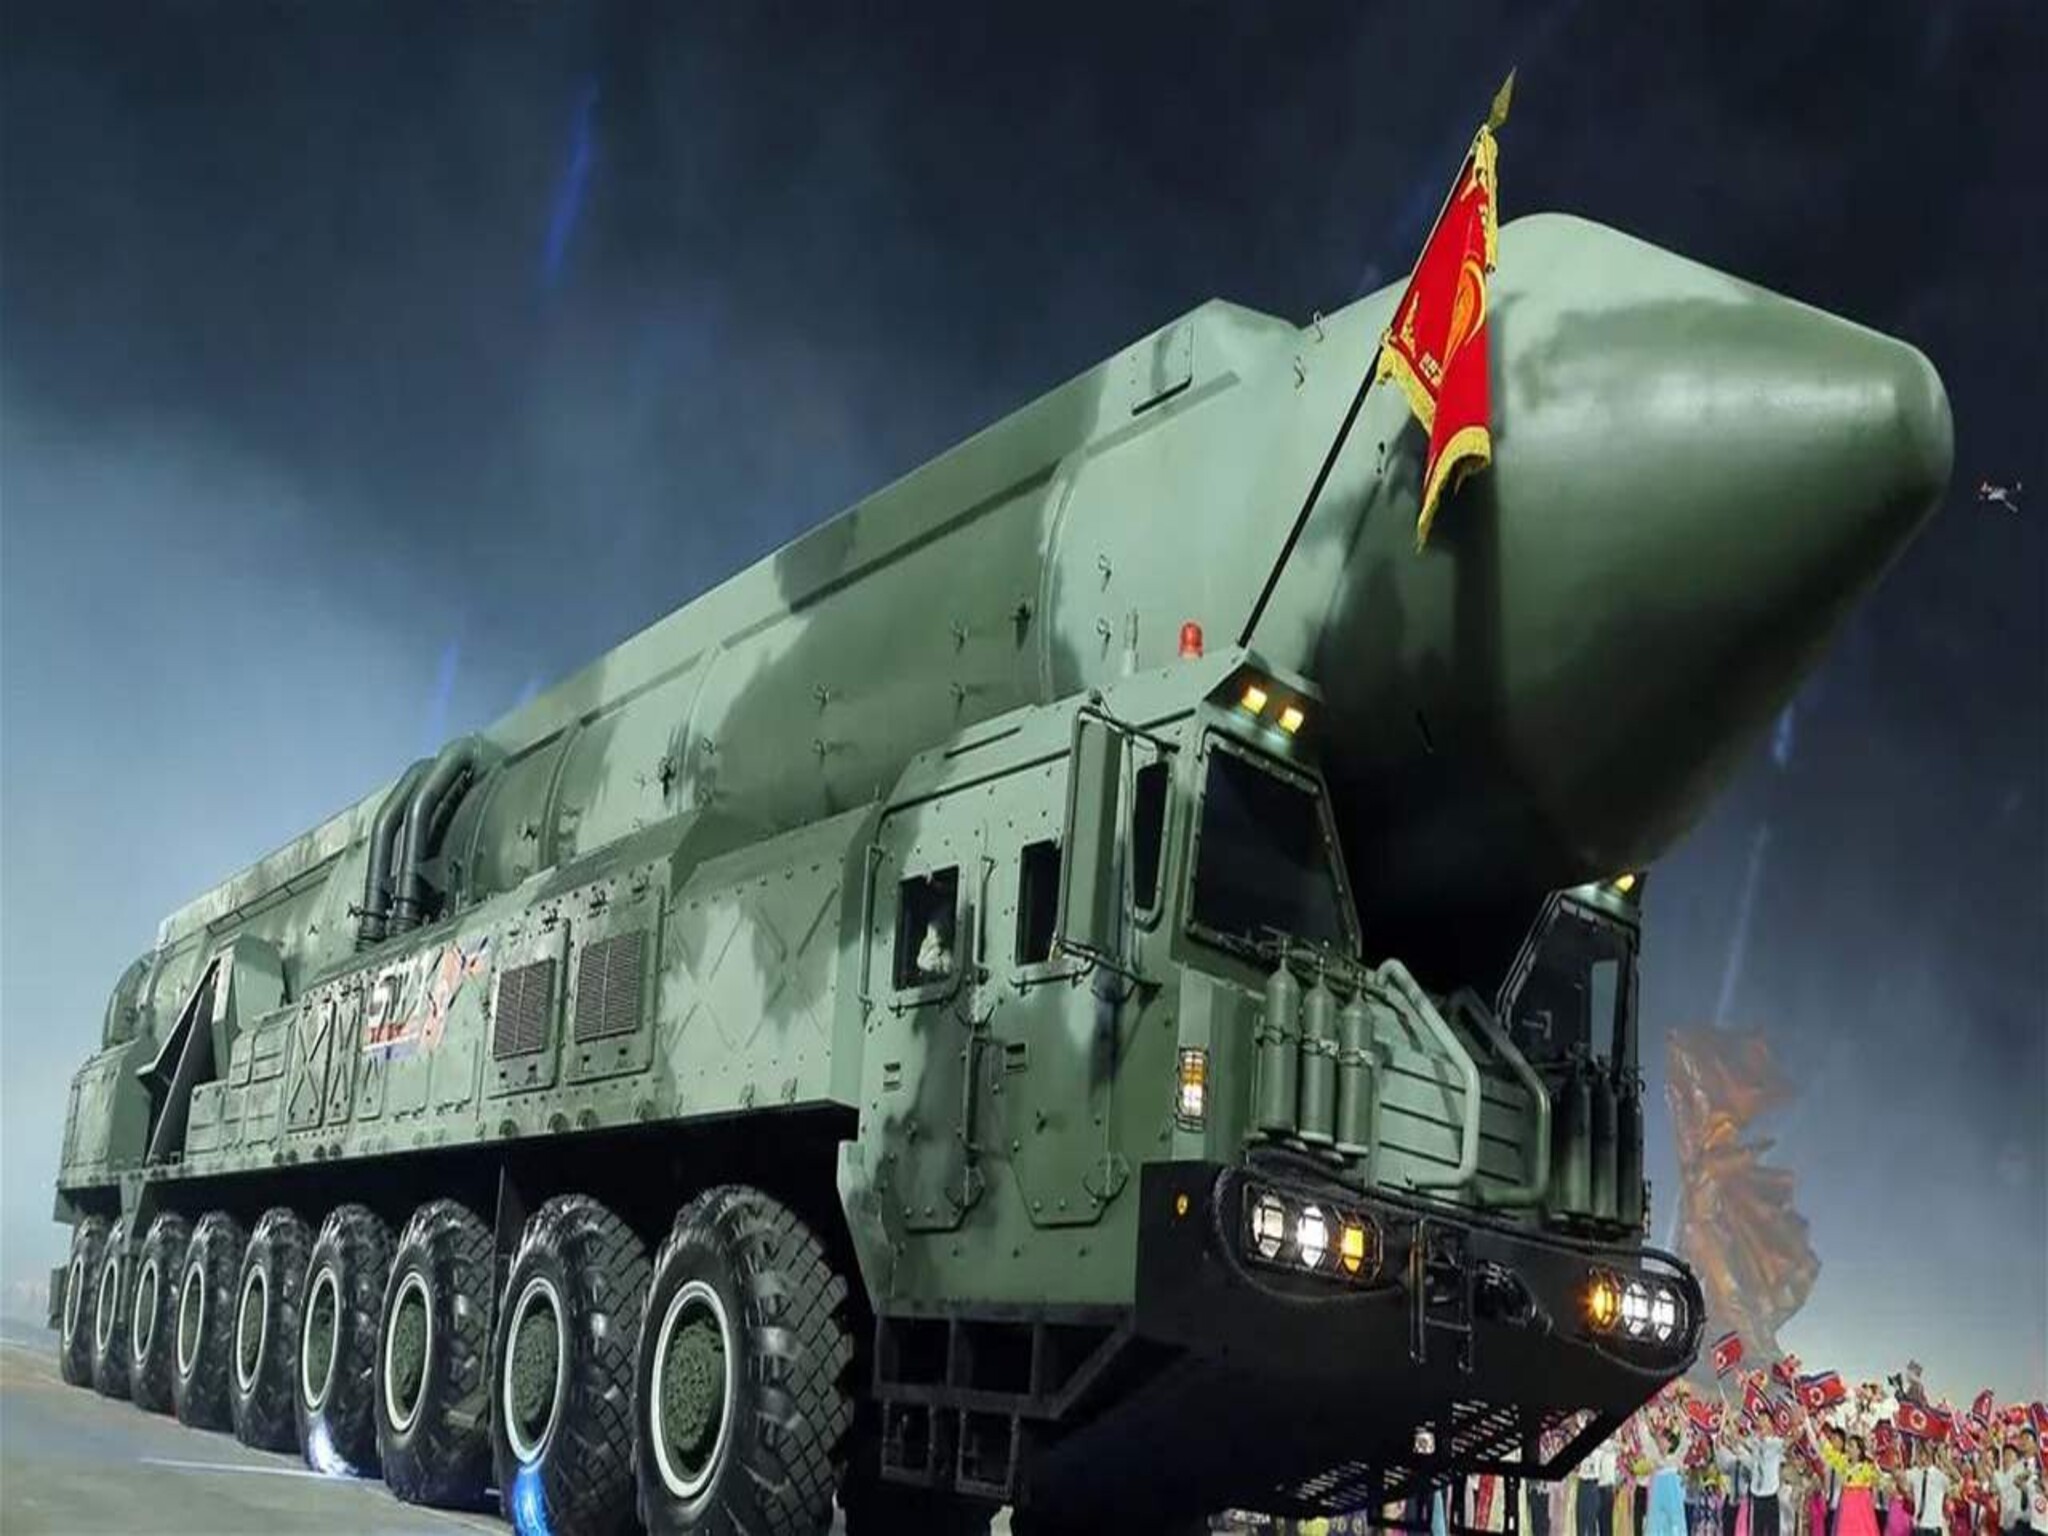 كوريا الشمالية تطلق صاروخ "باليستيا" بعيد المدى عابر للقارات